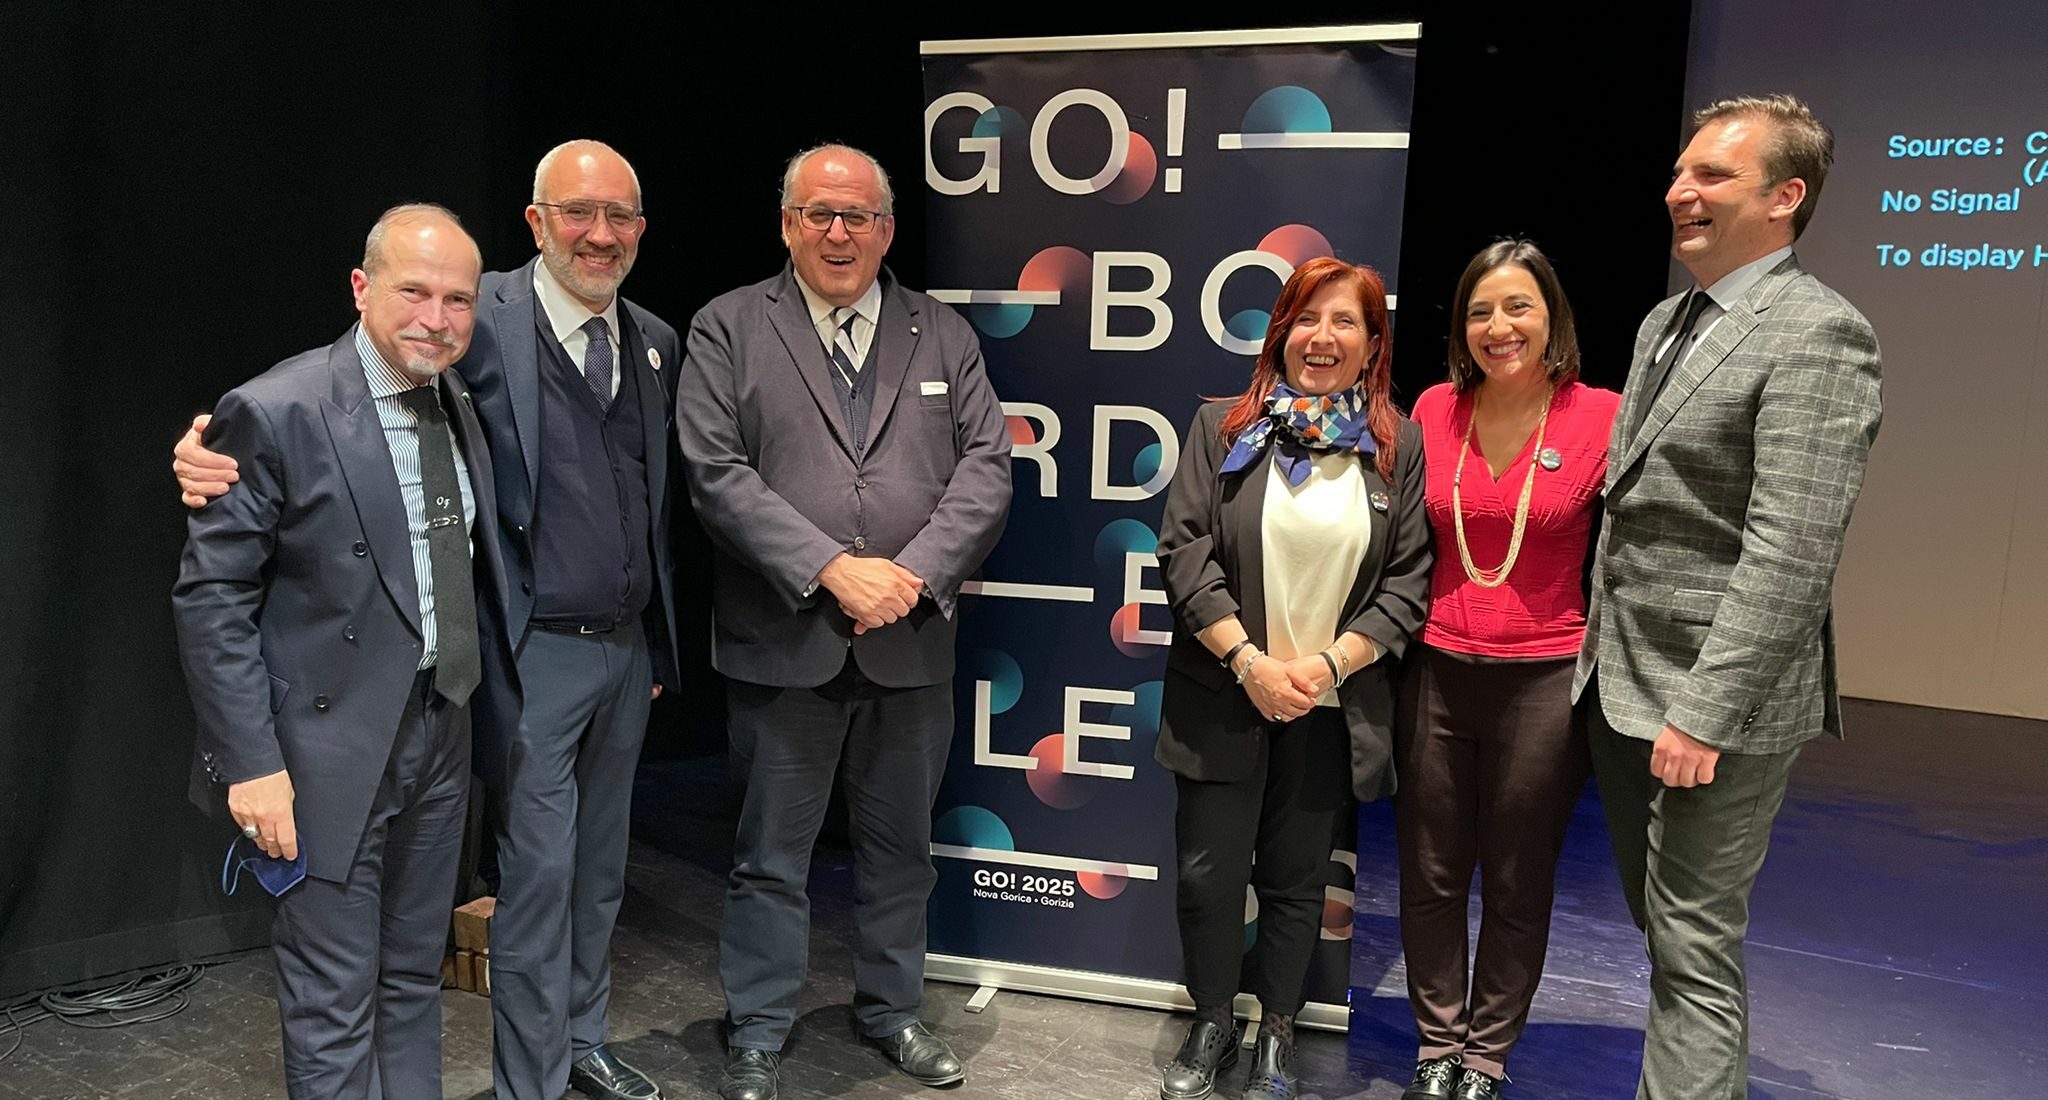 Matera 2019, conclusa la due giorni di confronto “Nova Gorica- Gorizia 2025”